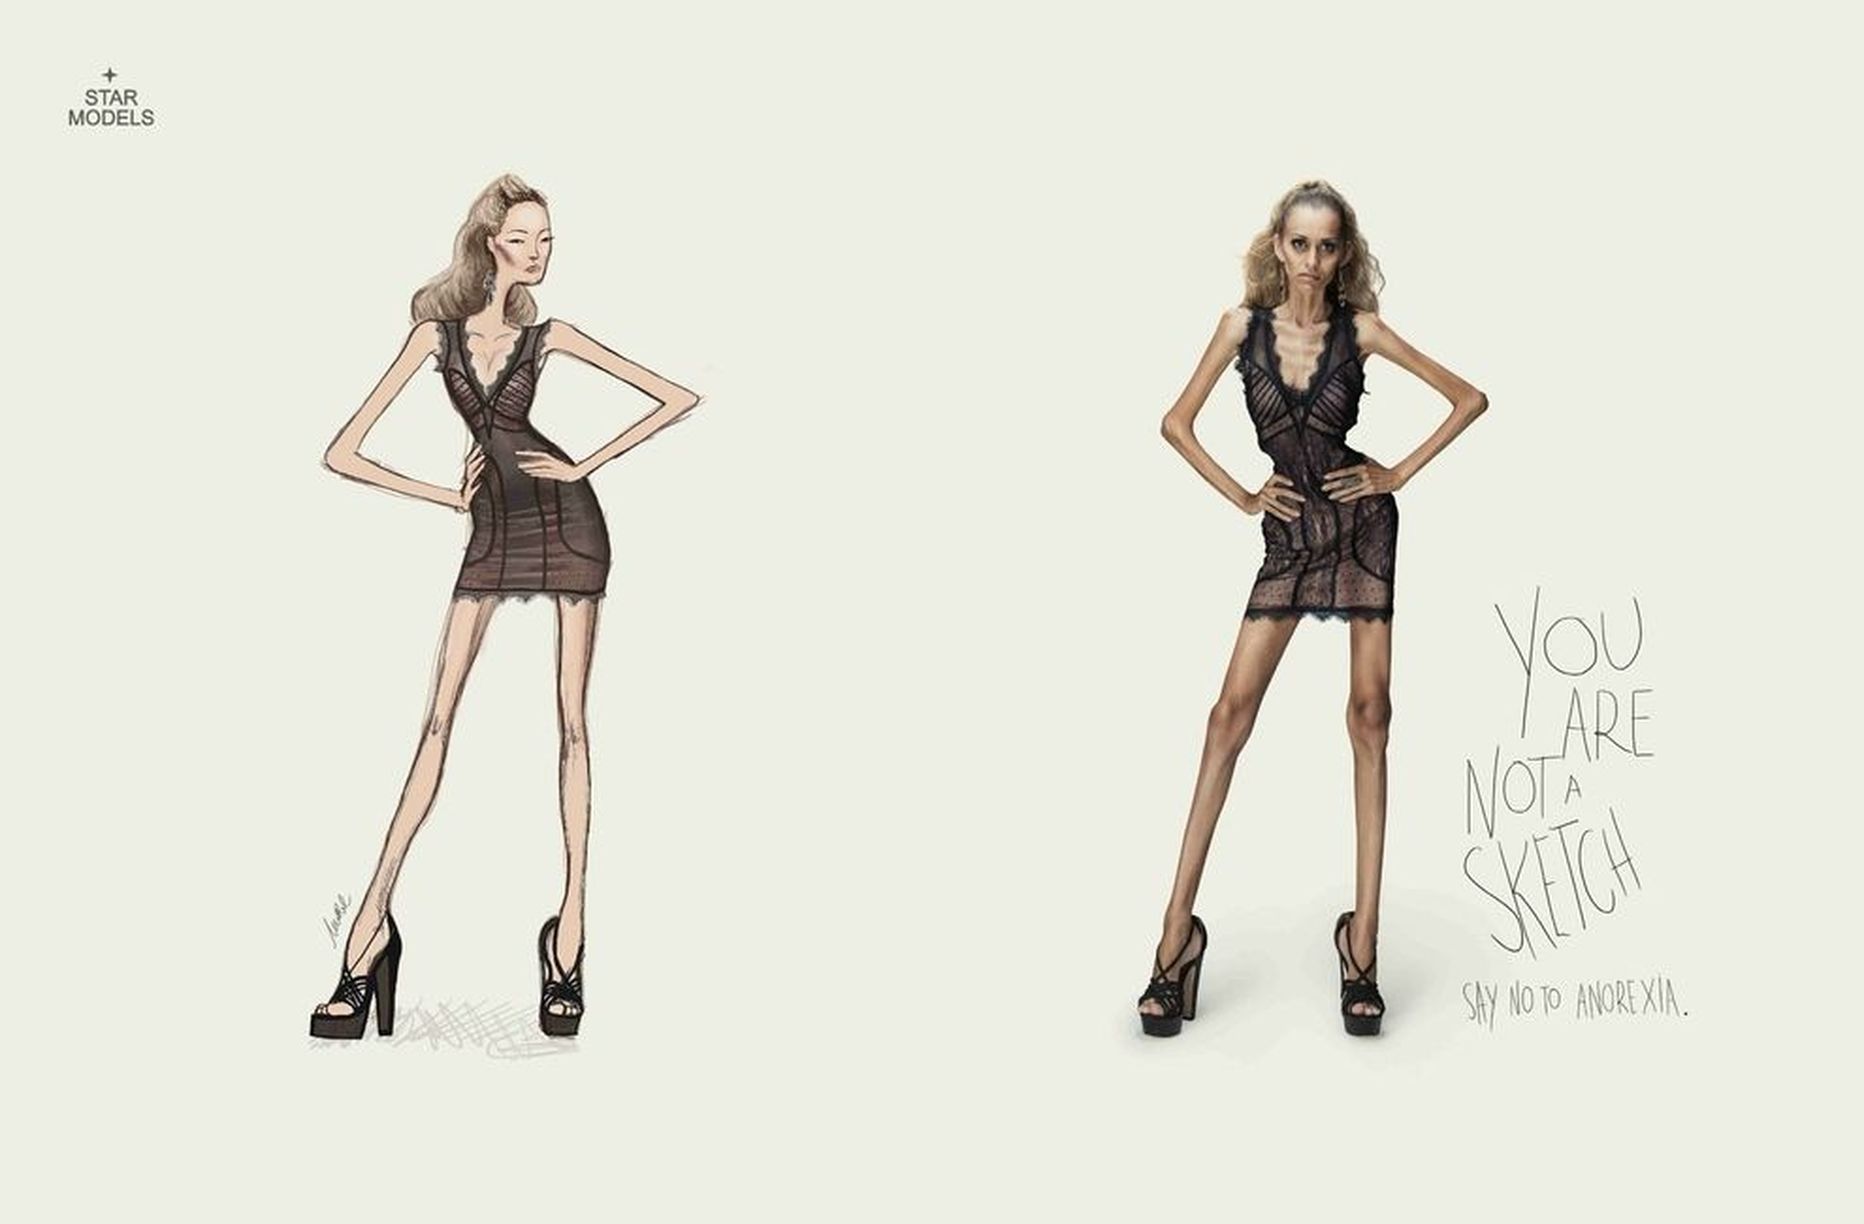 Pilt on illustreeriv ja kujutab anoreksiast teavitava hoiatuskampaaniat Star Modelsilt. Ekstreemselt «tervislik» toitumine on täpselt sama tappev!